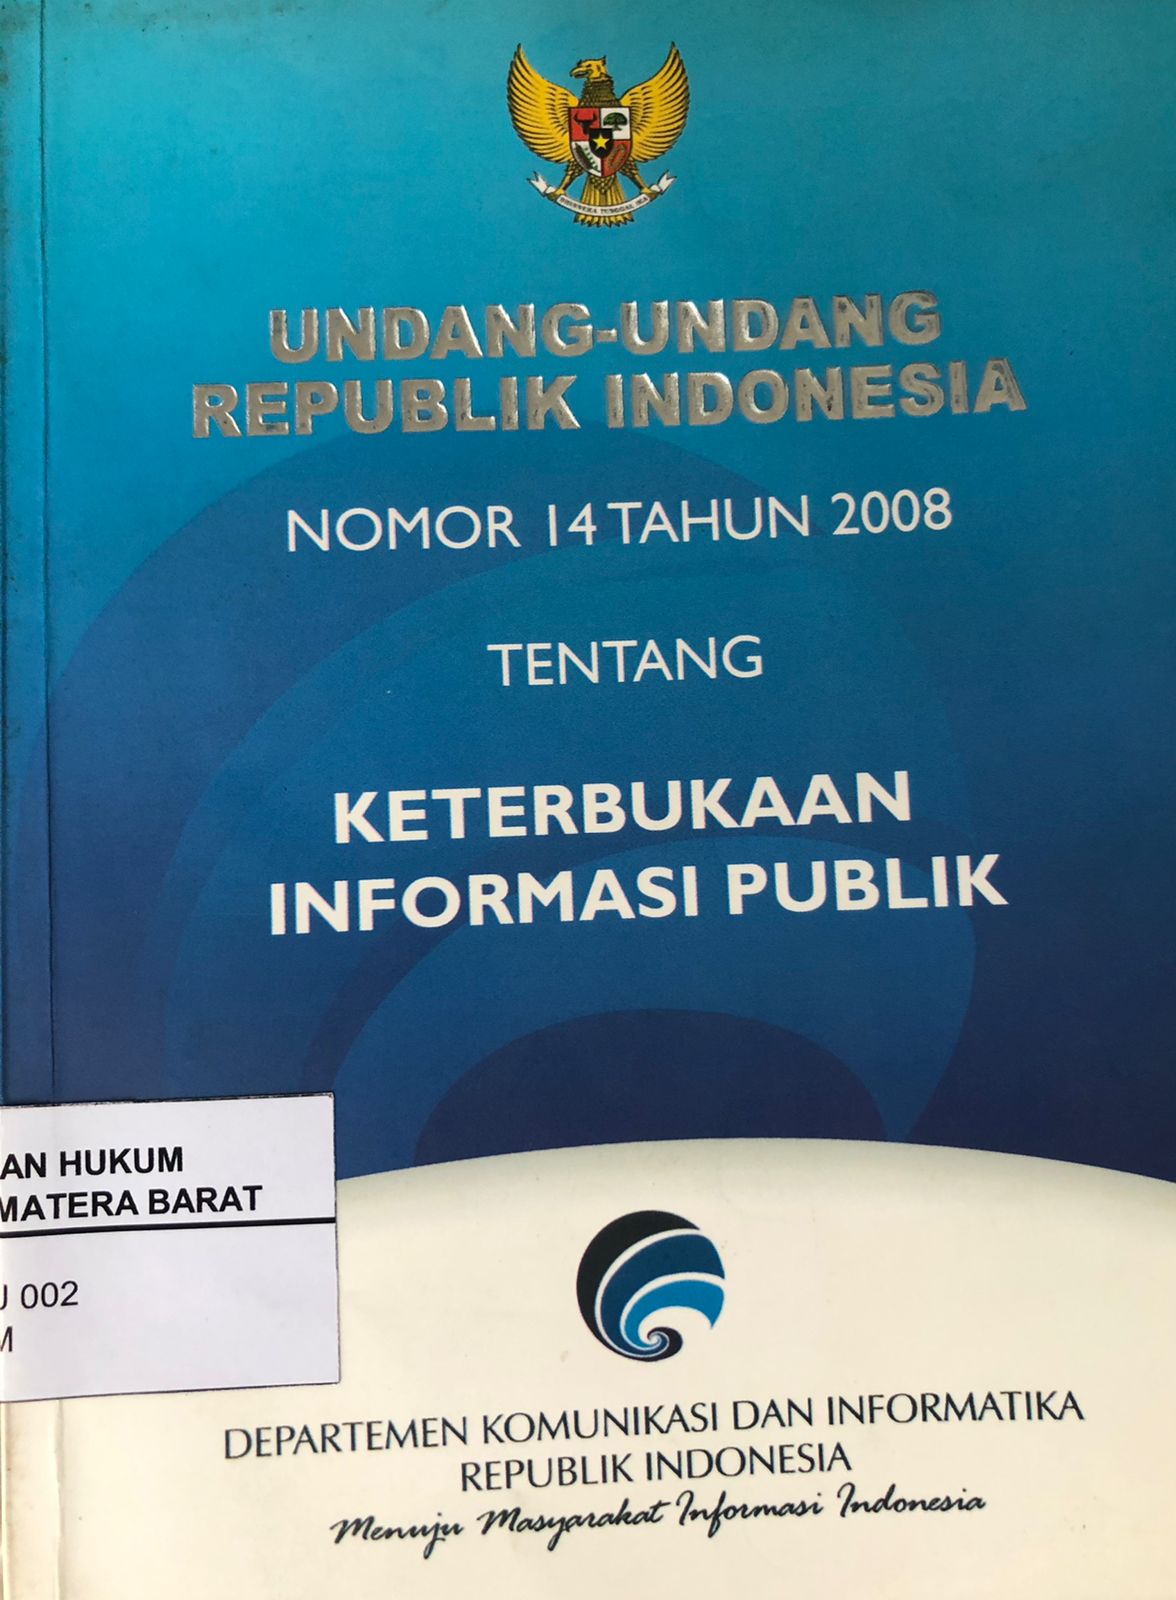 Undang-Undang Republik Indonesia No. 14 Tahun 2008 Tentang Keterbukaan Informasi Publik